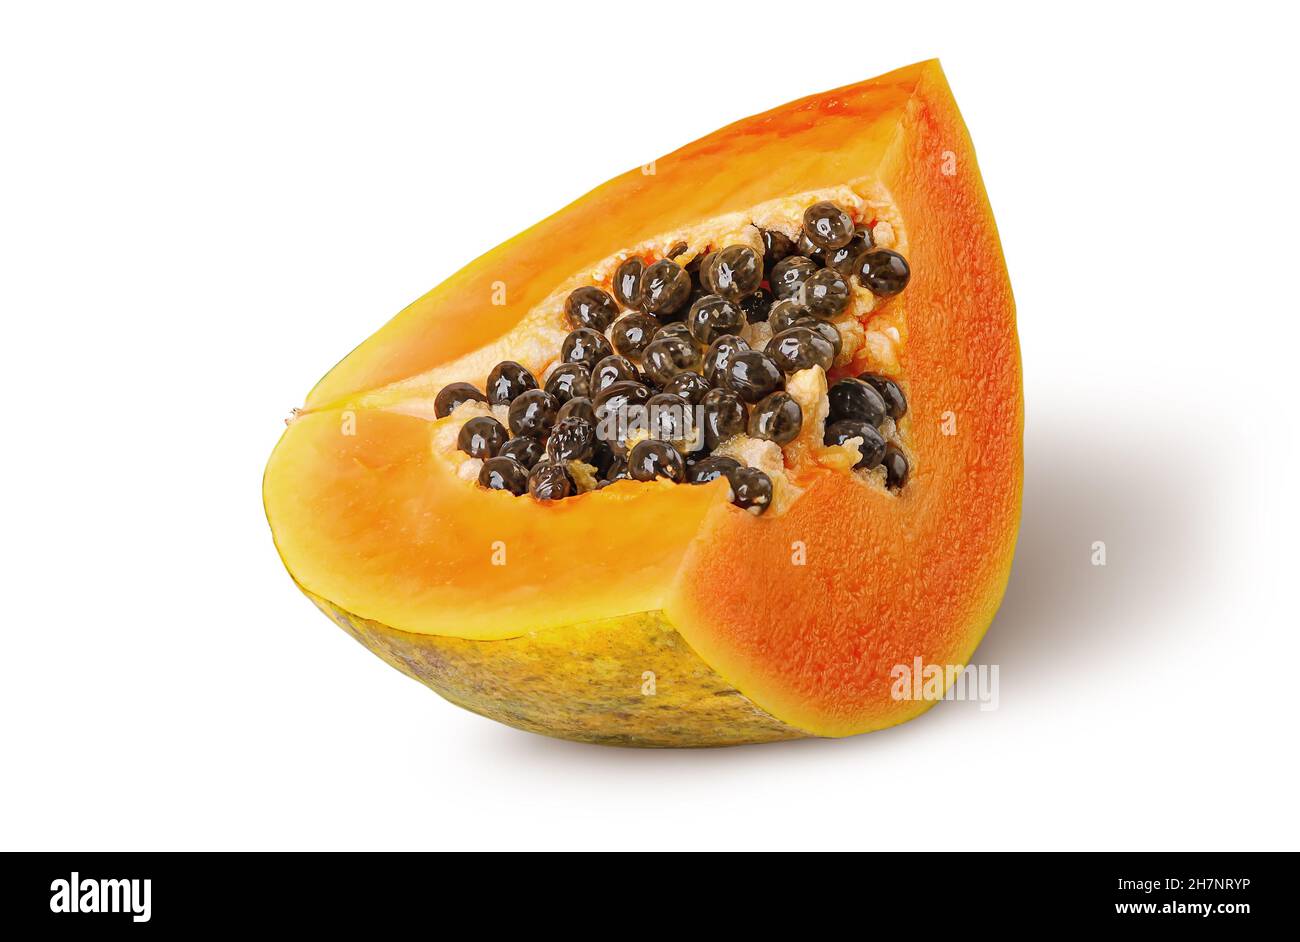 Single segment of ripe papaya isolated on white background Stock Photo